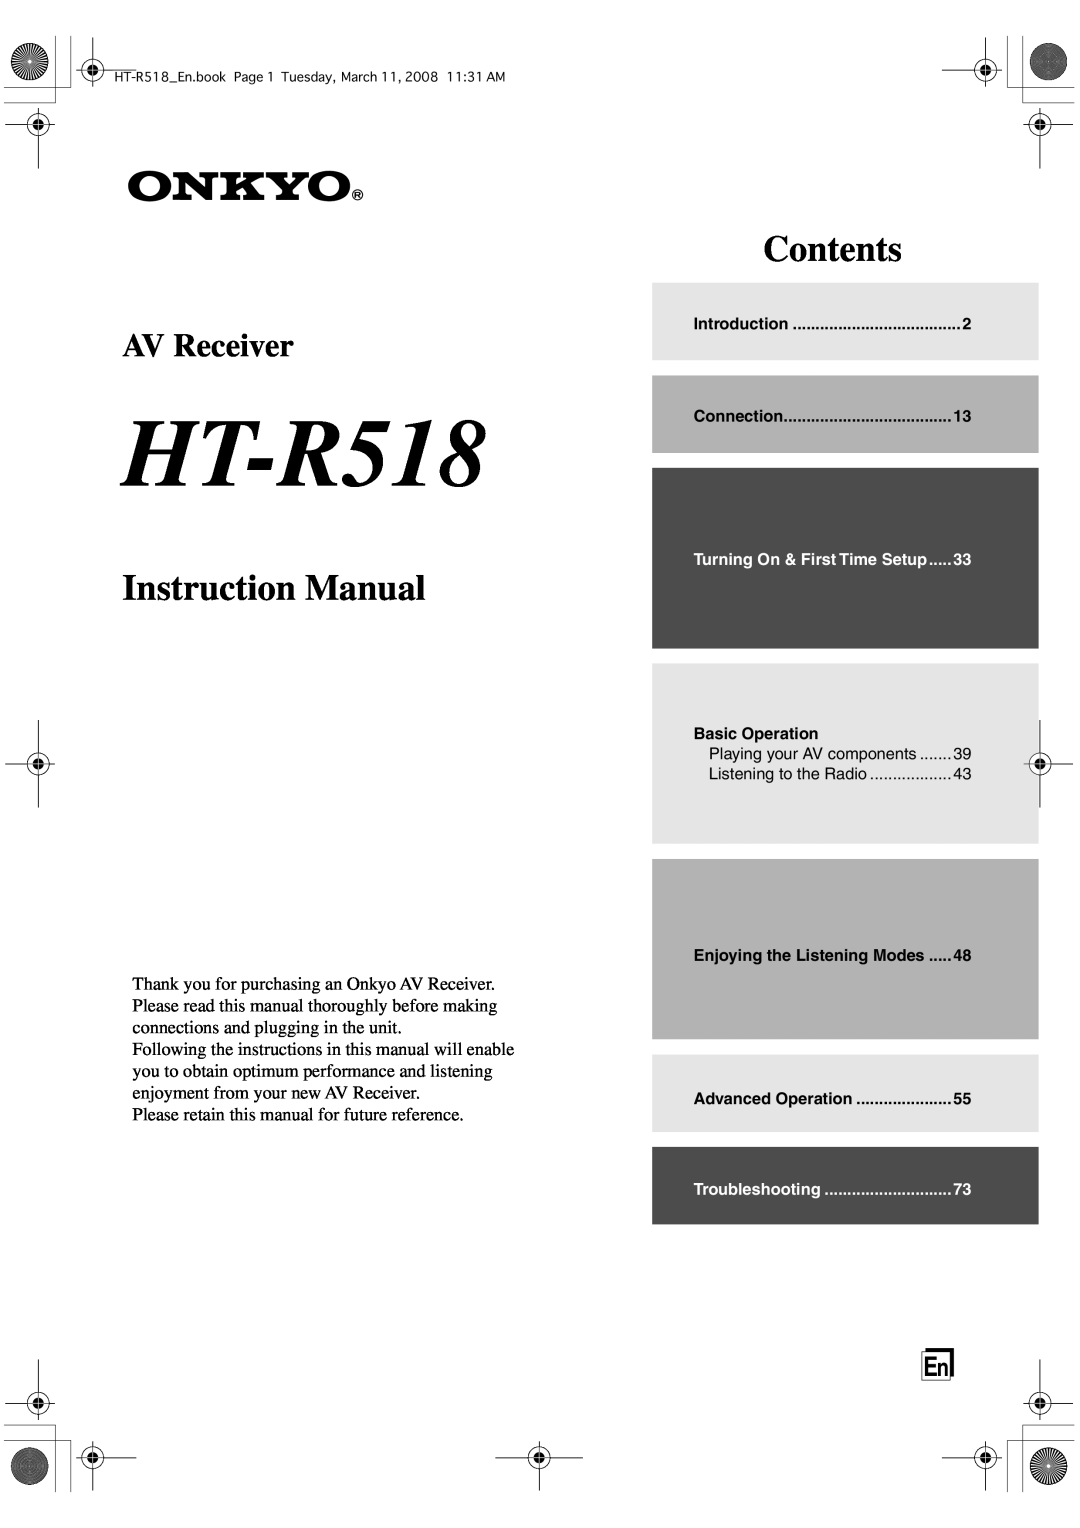 Onkyo HT-R518 instruction manual Contents, AV Receiver 